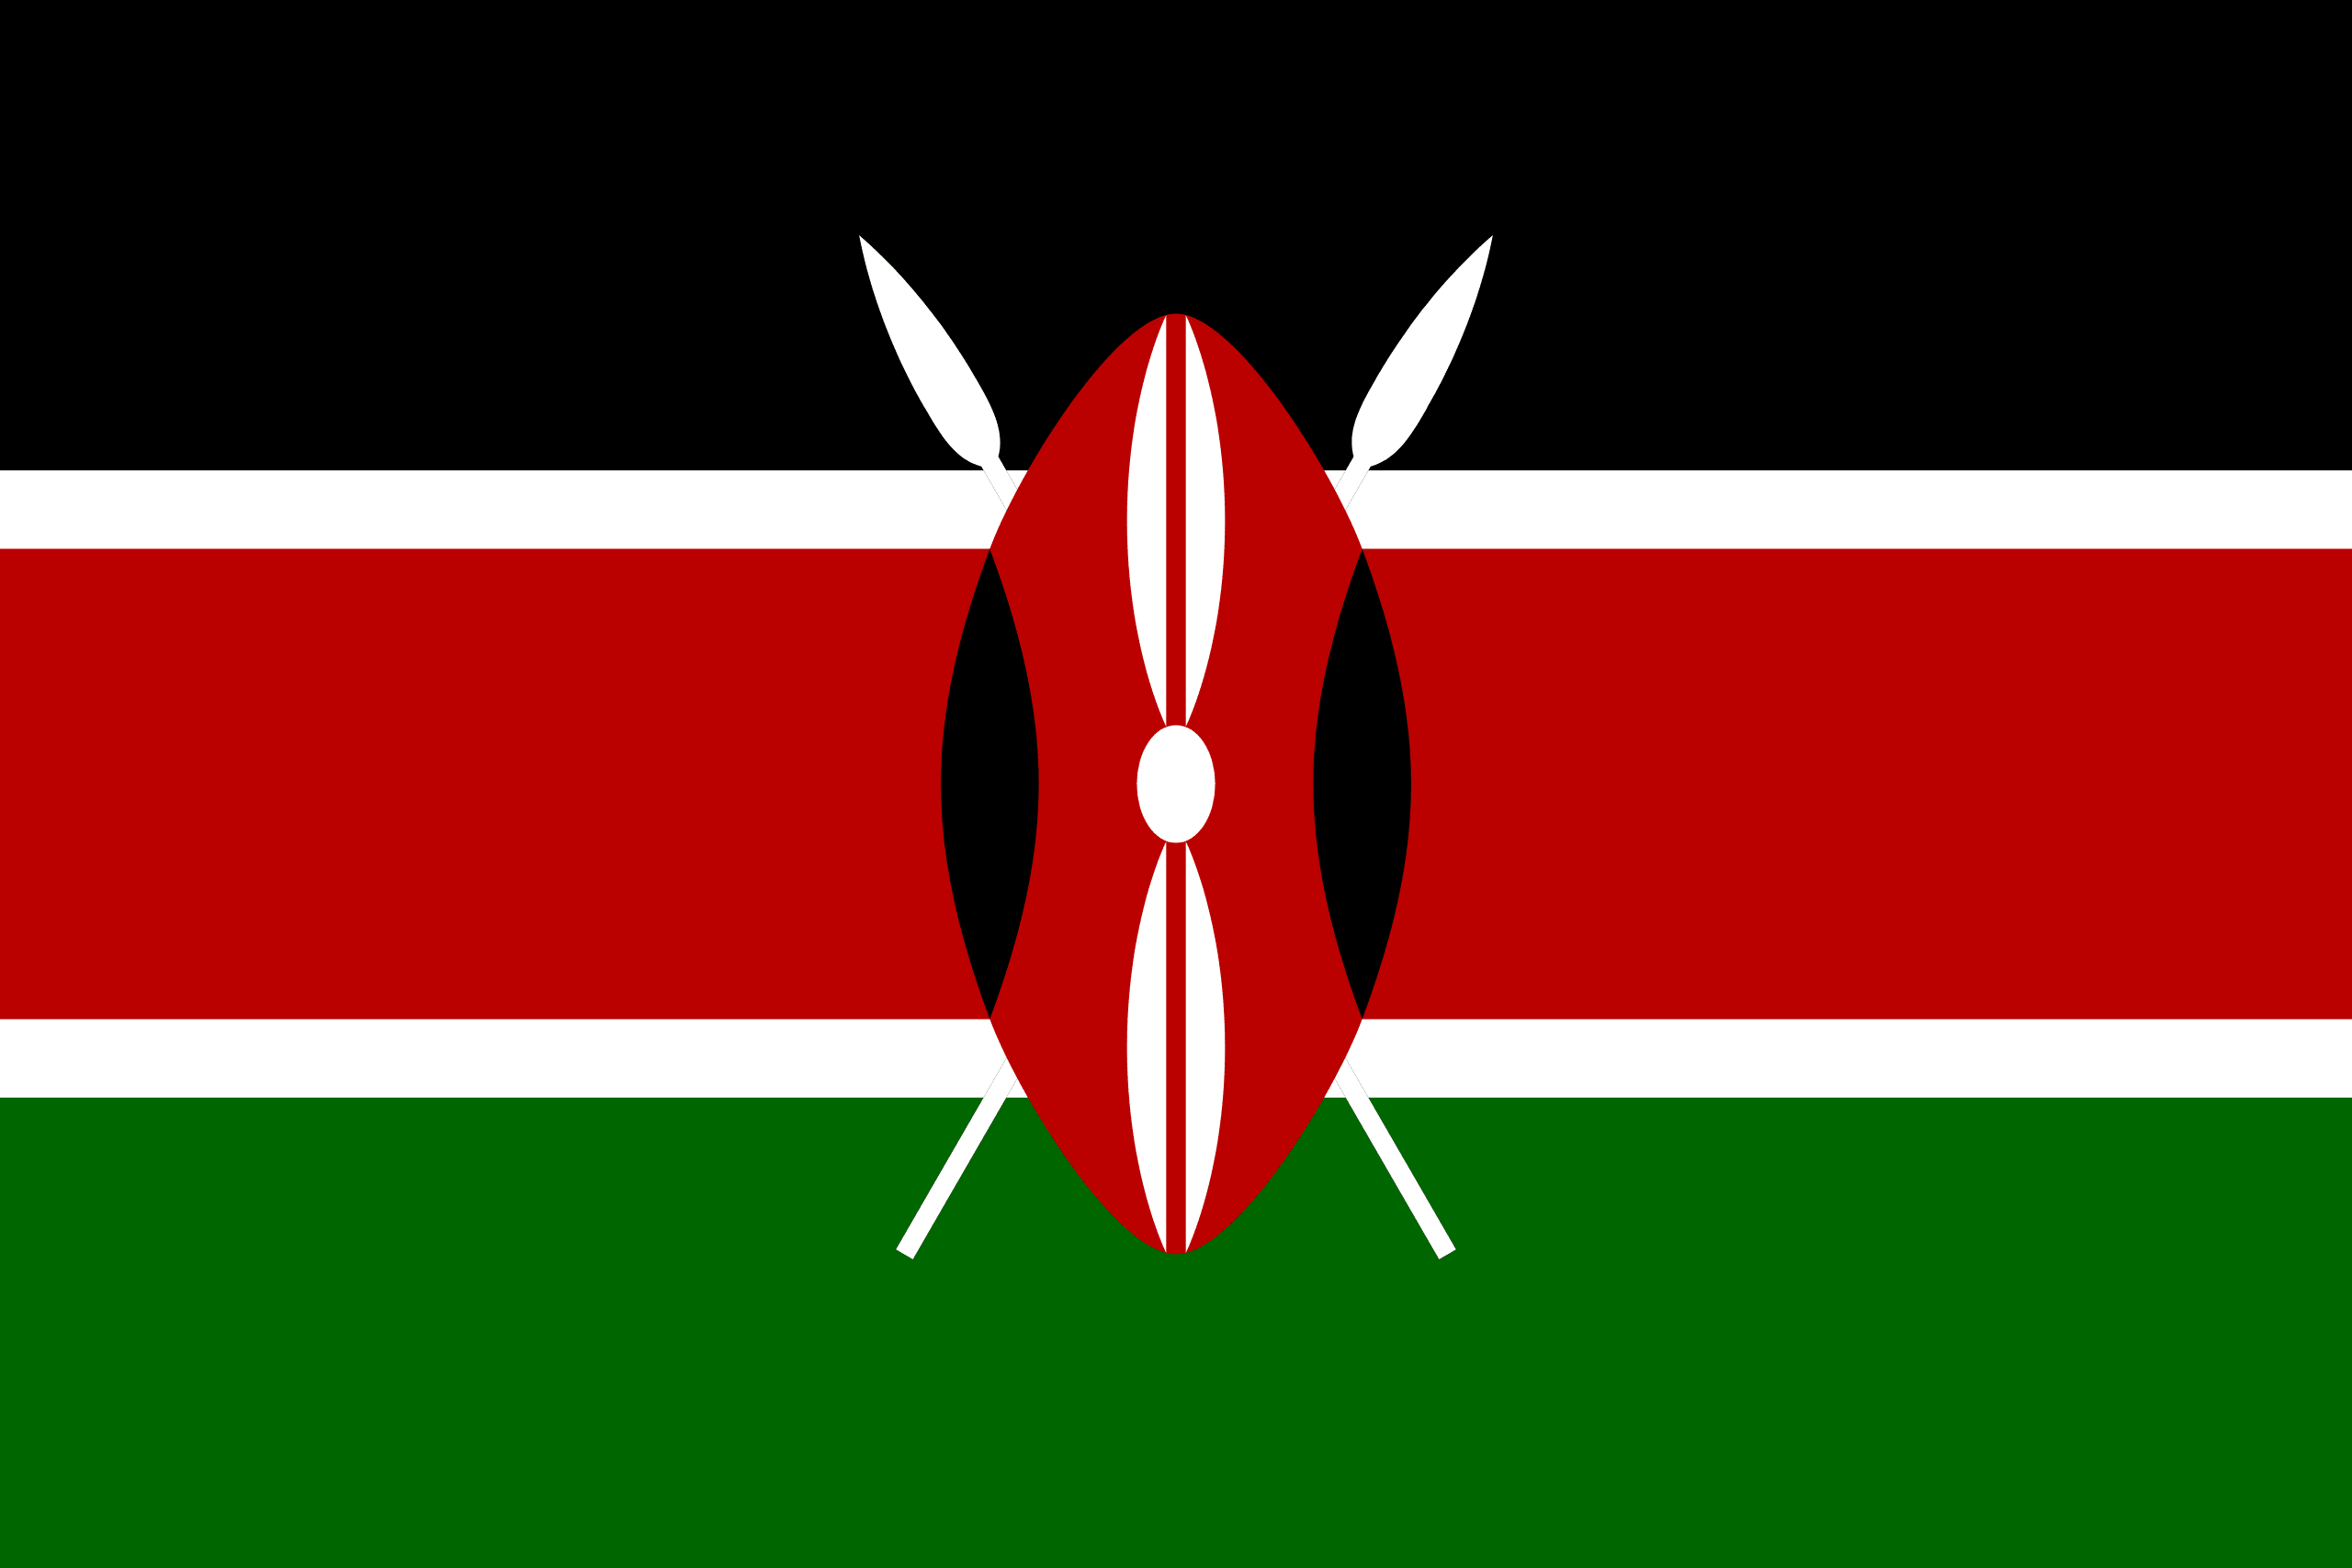 ケニア共和国 flag